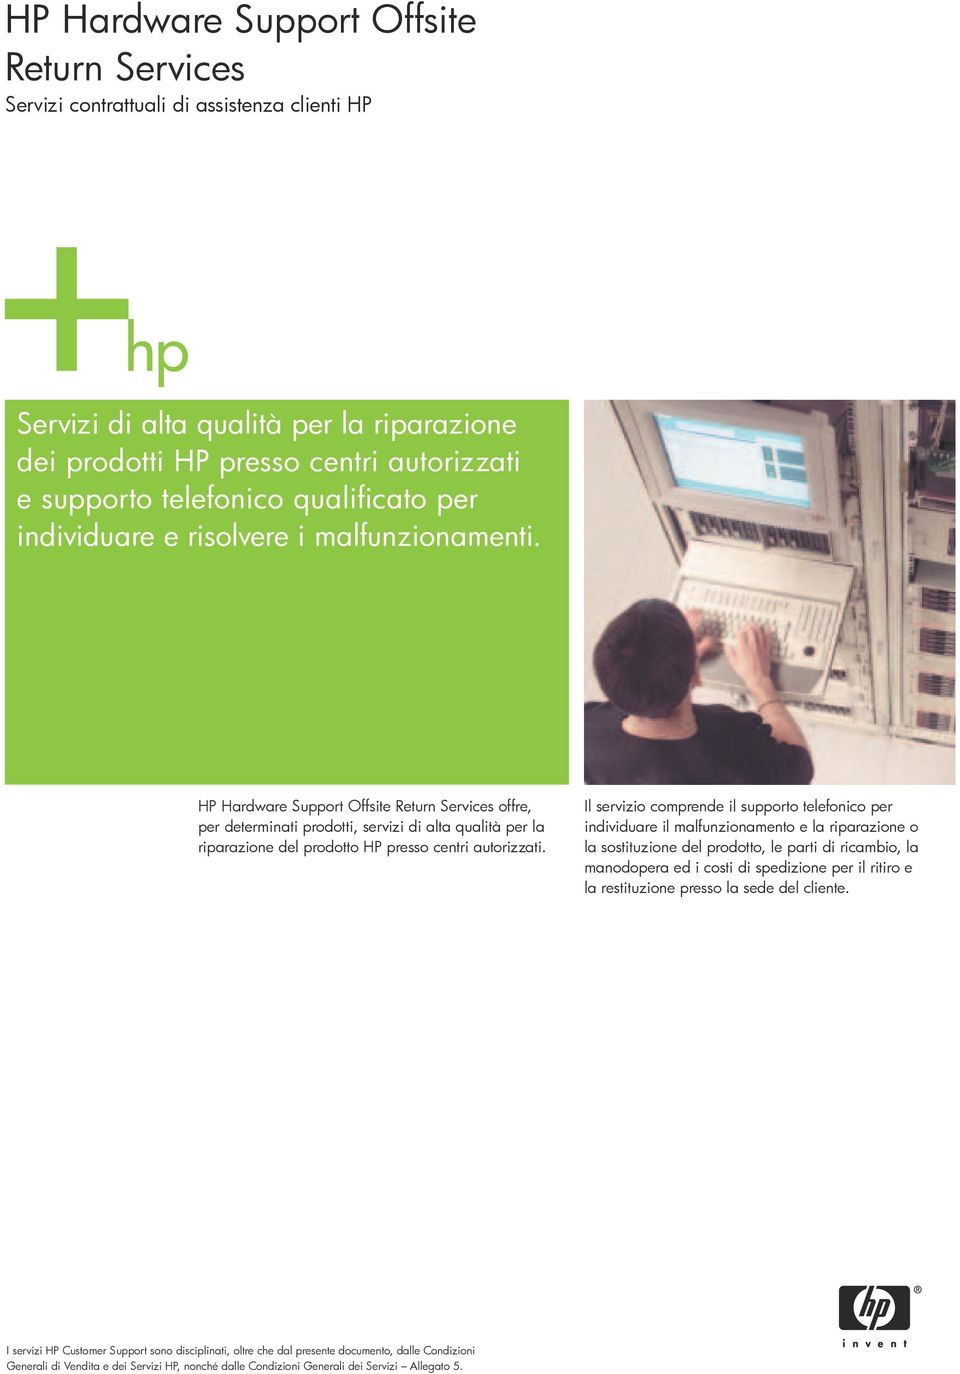 HP Hardware Support Offsite Return Services offre, per determinati prodotti, servizi di alta qualità per la riparazione del prodotto HP presso centri autorizzati.